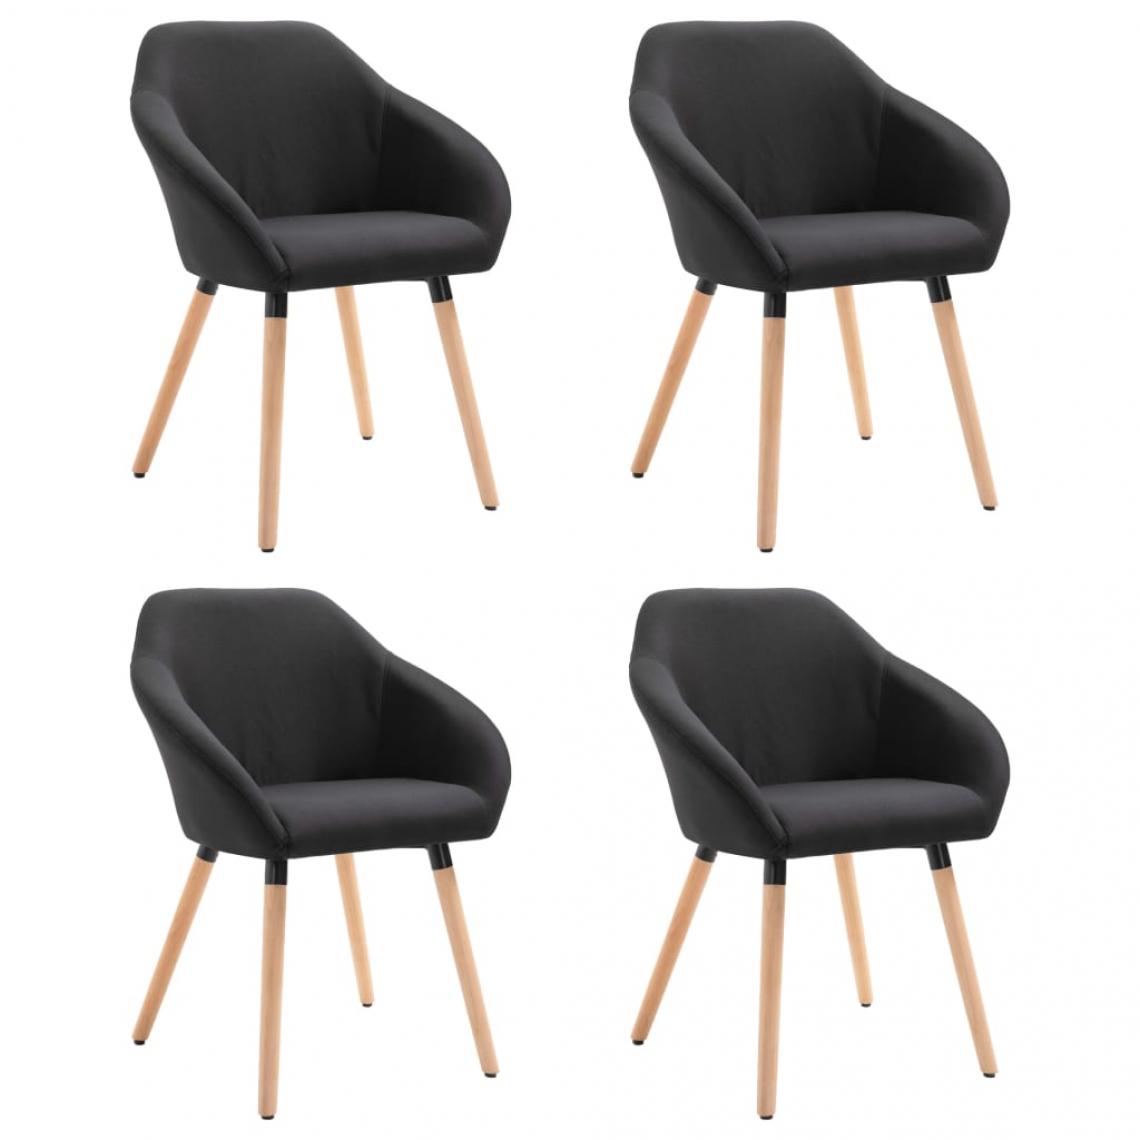 Decoshop26 - Lot de 4 chaises de salle à manger cuisine style scandinave en tissu noir pieds en bois CDS021842 - Chaises